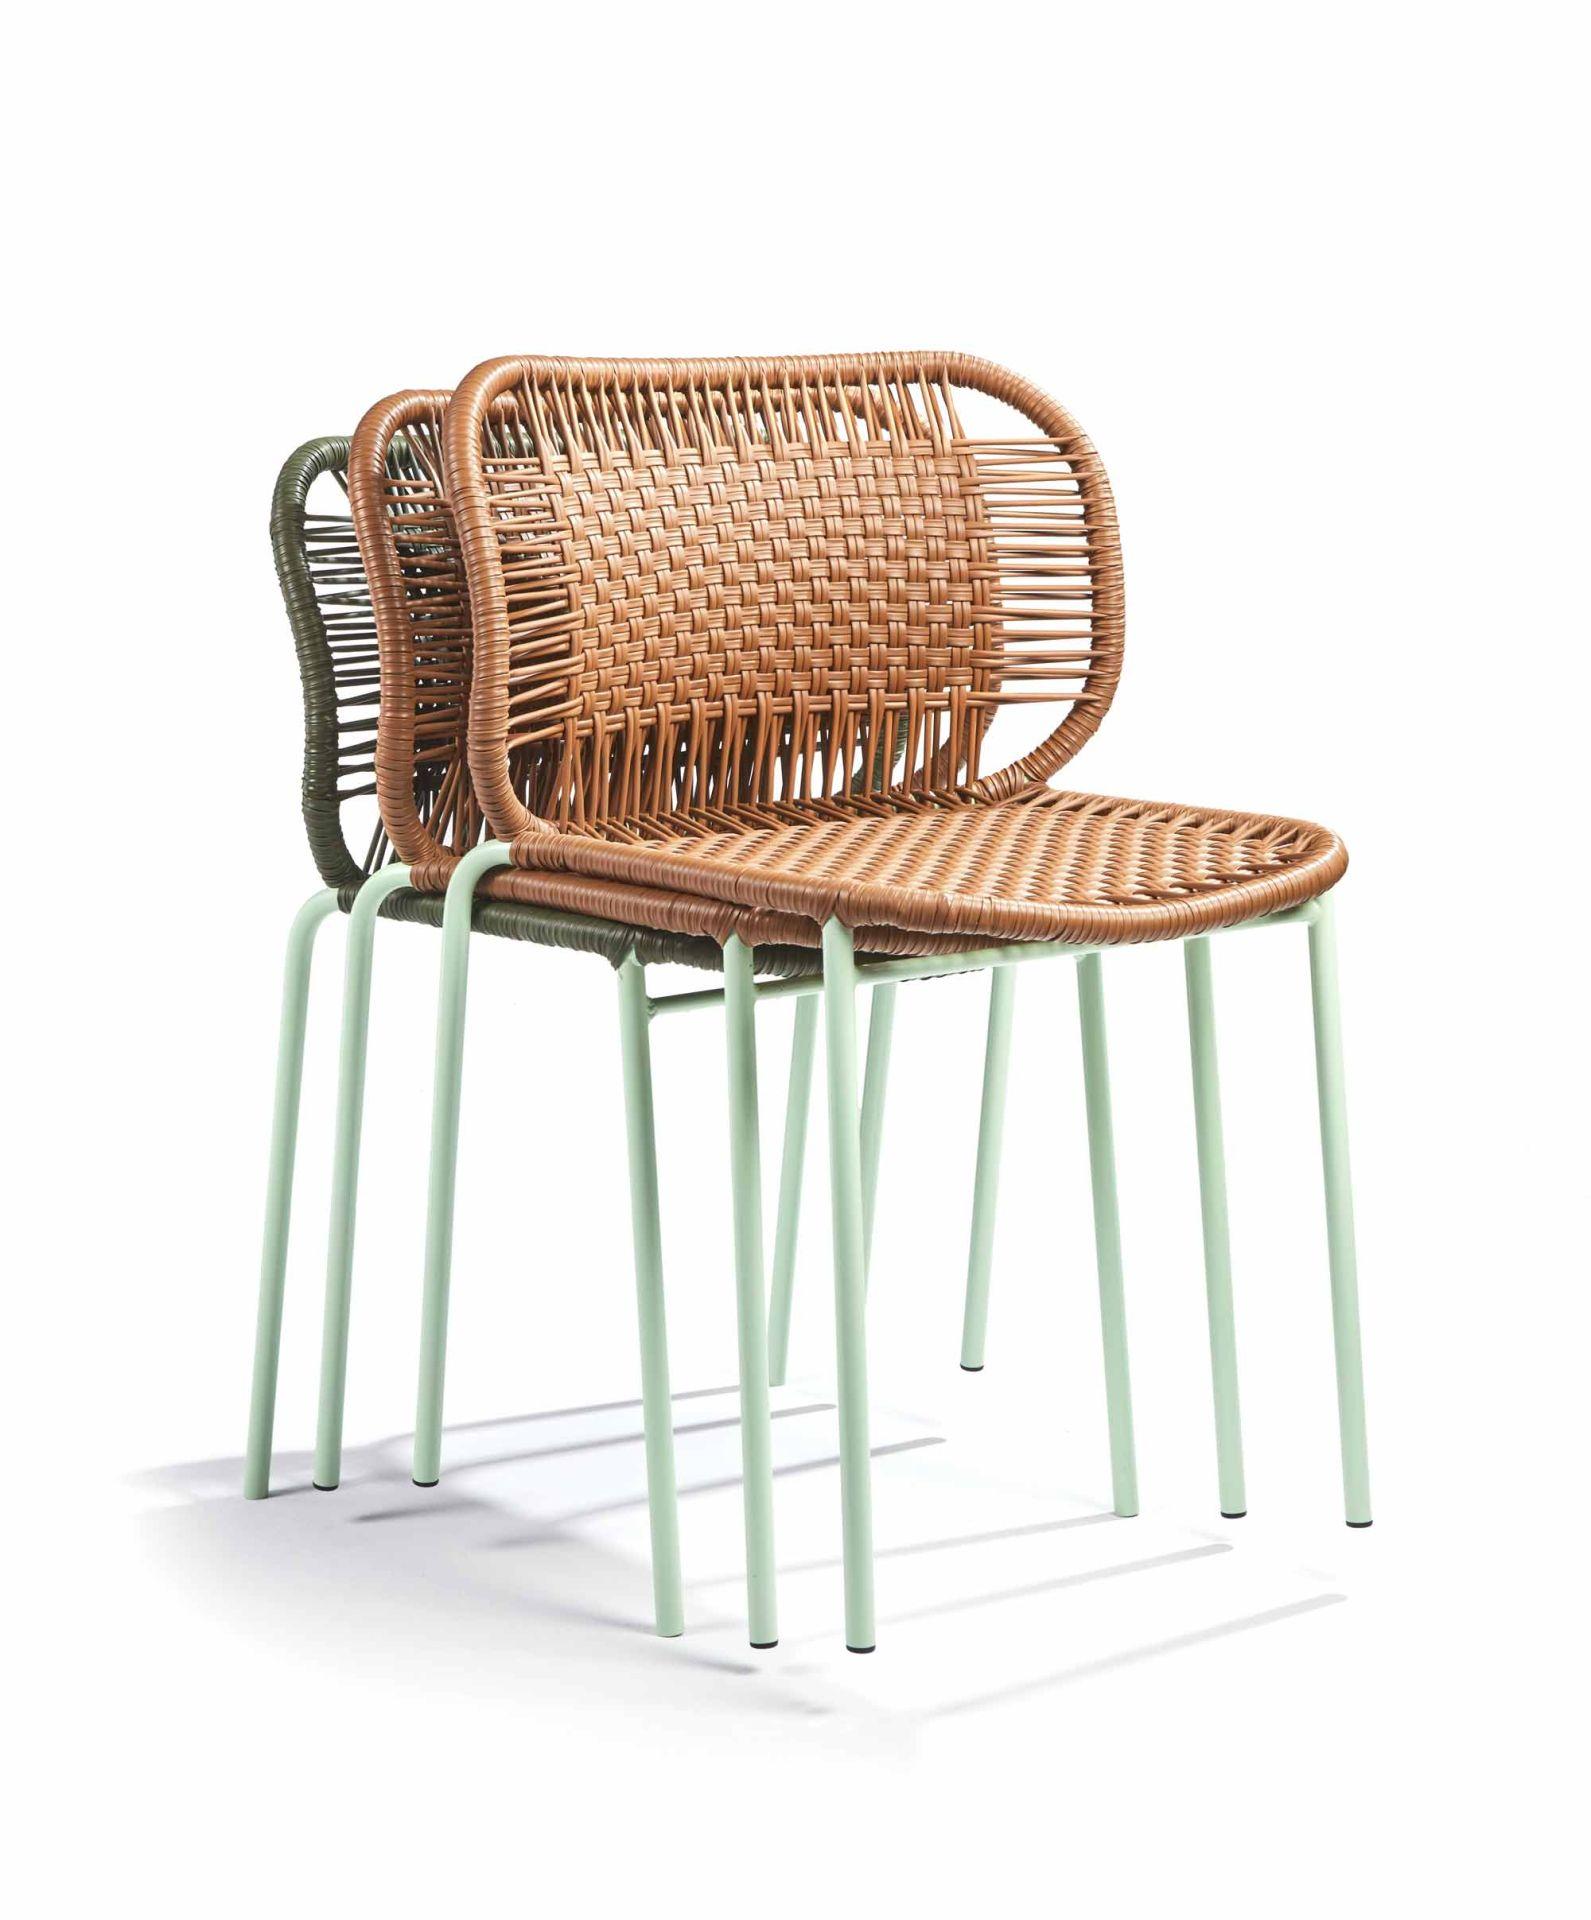 La chaise empilable Cielo est un modèle léger, polyvalent et confortable conçu par Sebastian Herkner. Il est prêt à être utilisé à l'intérieur et à l'extérieur et constitue un excellent choix pour créer des arrangements de sièges inspirés sur une